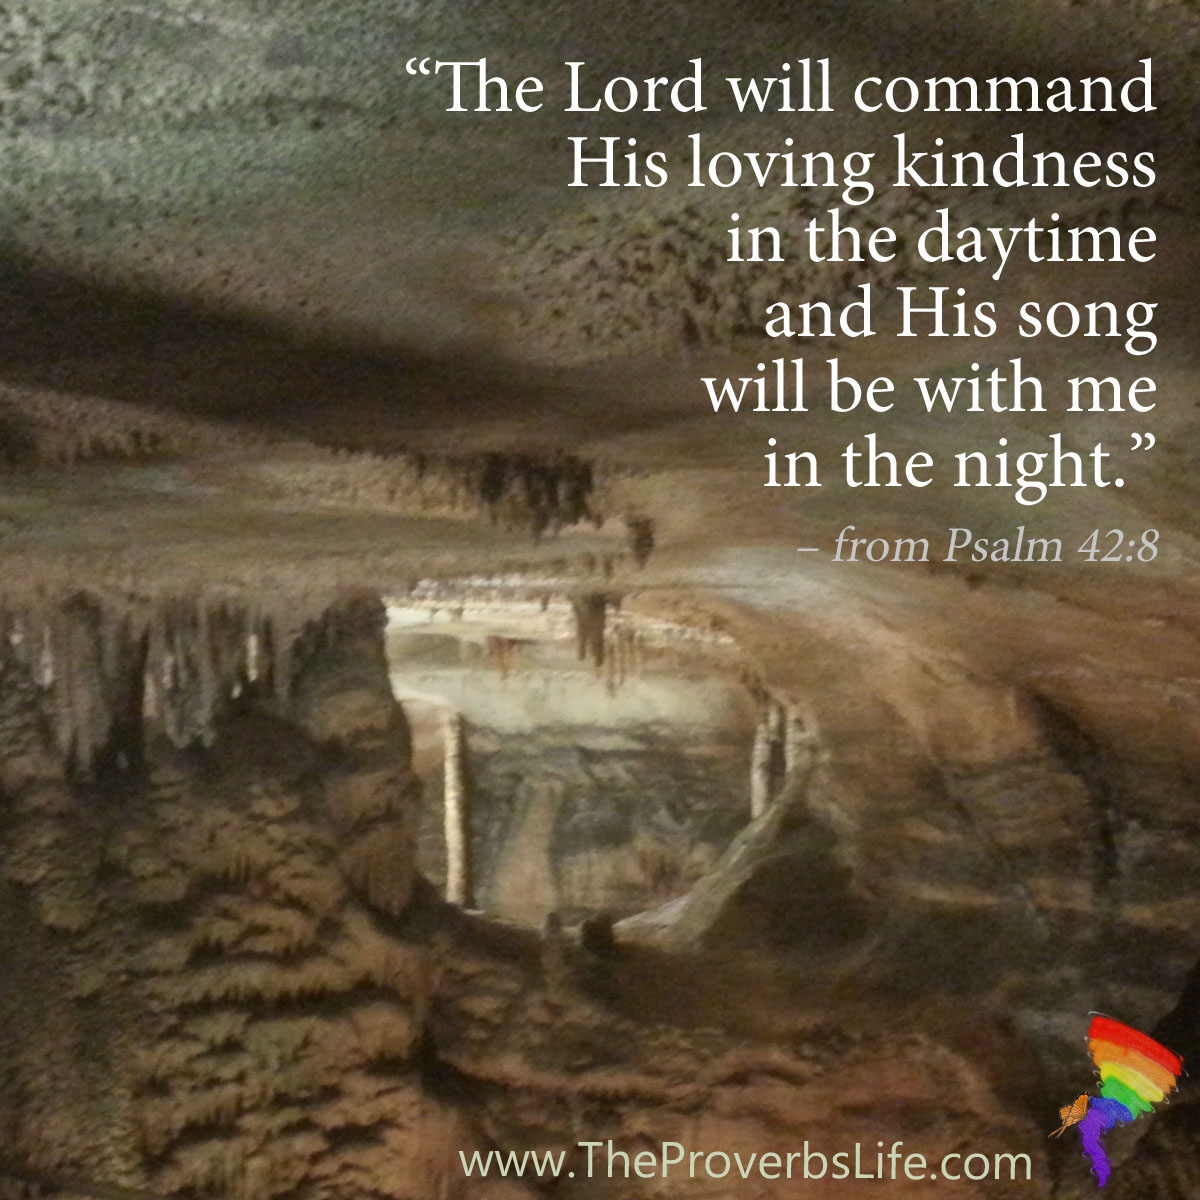 Scripture Focus - Psalm 42:8